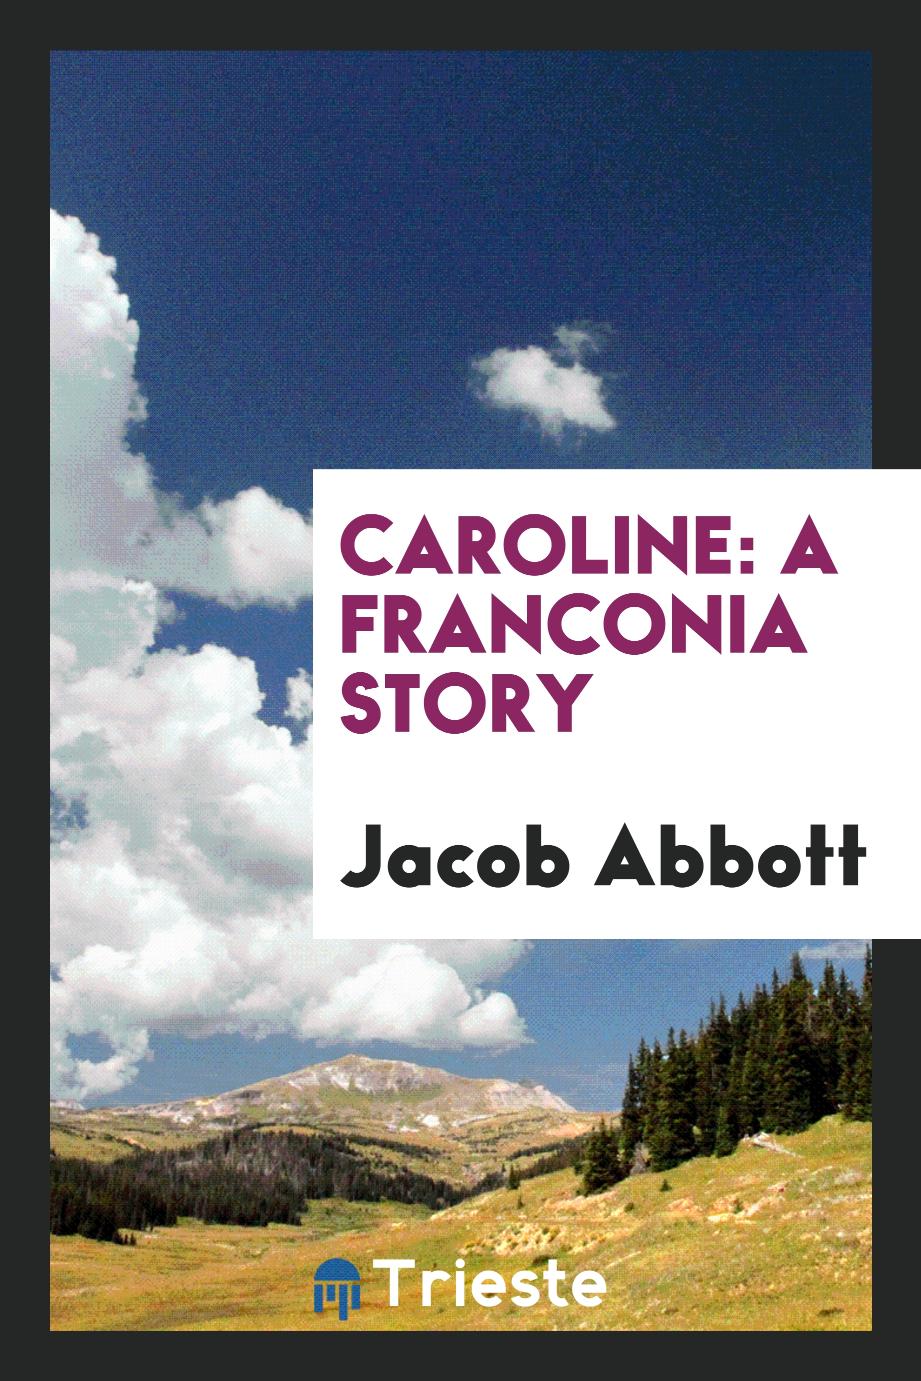 Caroline: A Franconia Story